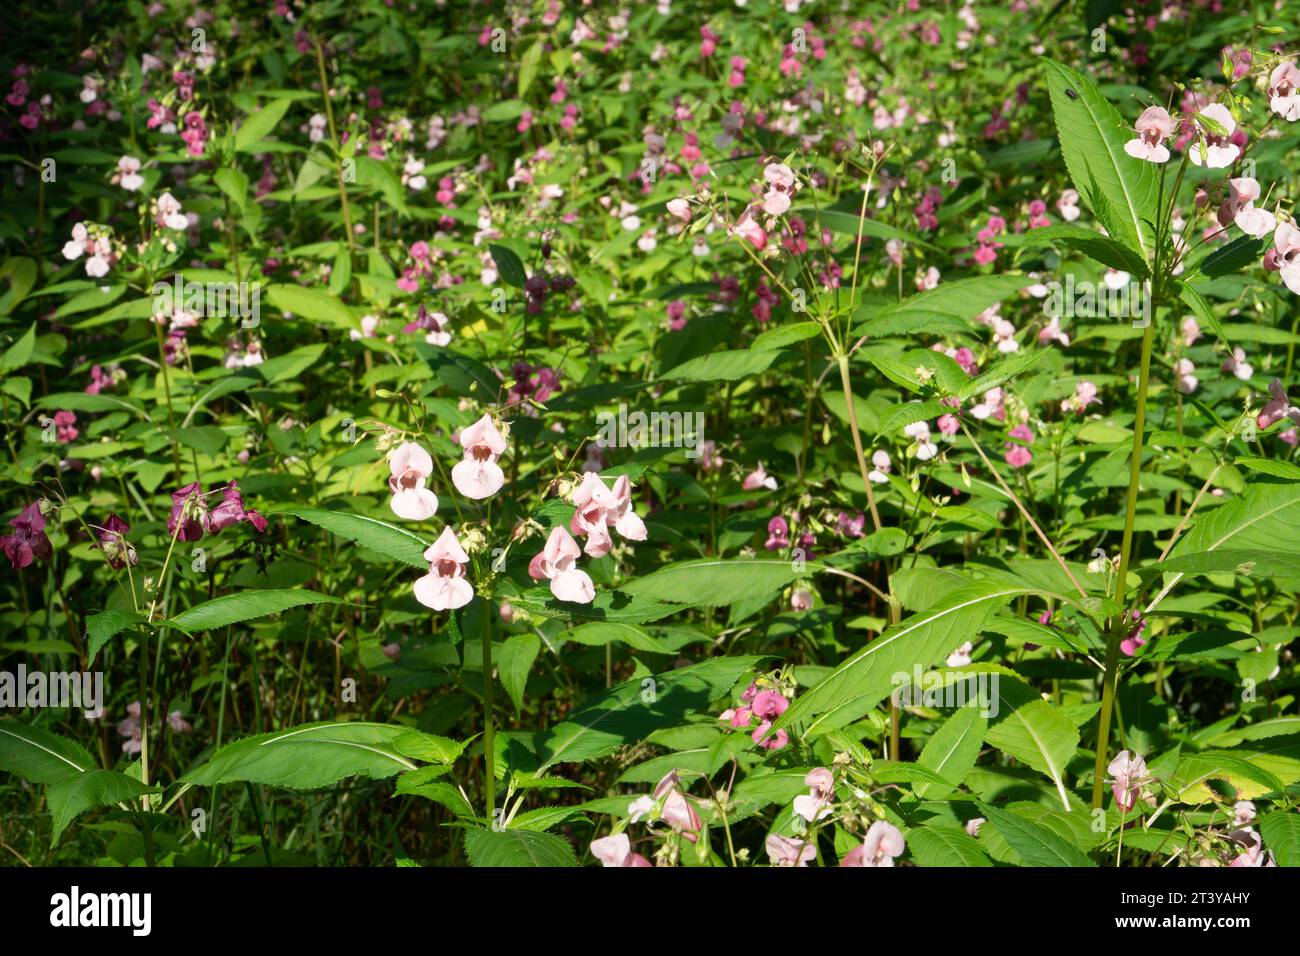 Invasión de plantas. Florece la planta del bálsamo del Himalaya (Impatiens glandulifera). Esta es una de las especies invasoras que se ha incluido desde 2017 en t Foto de stock